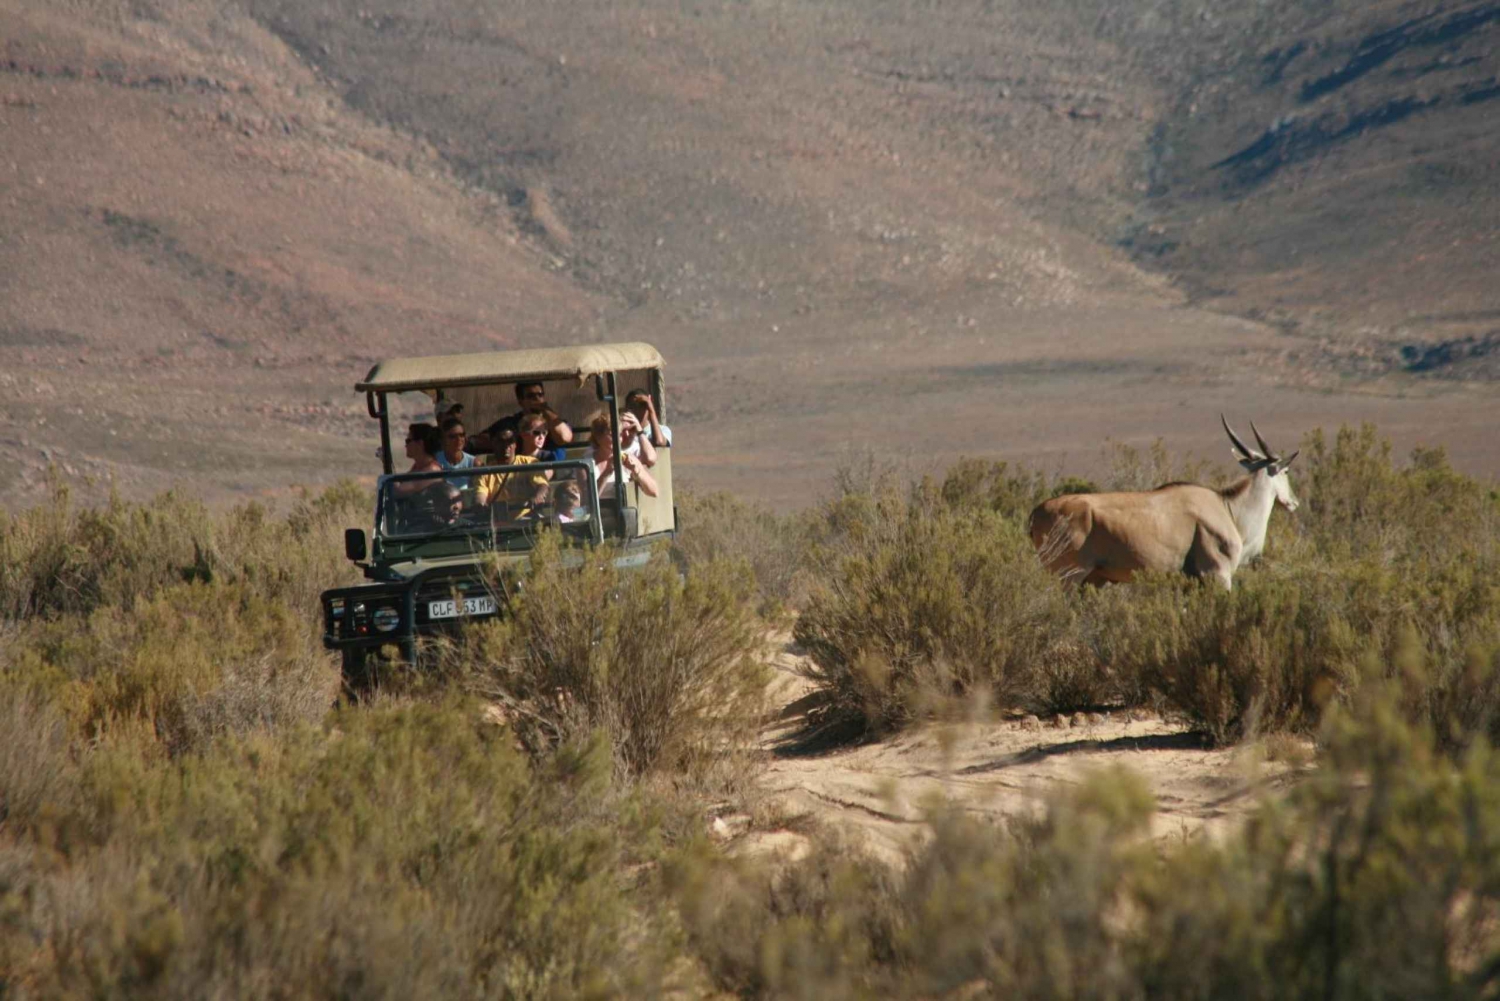 Desde Ciudad del Cabo Viaje de ida y vuelta a Aquila con safari